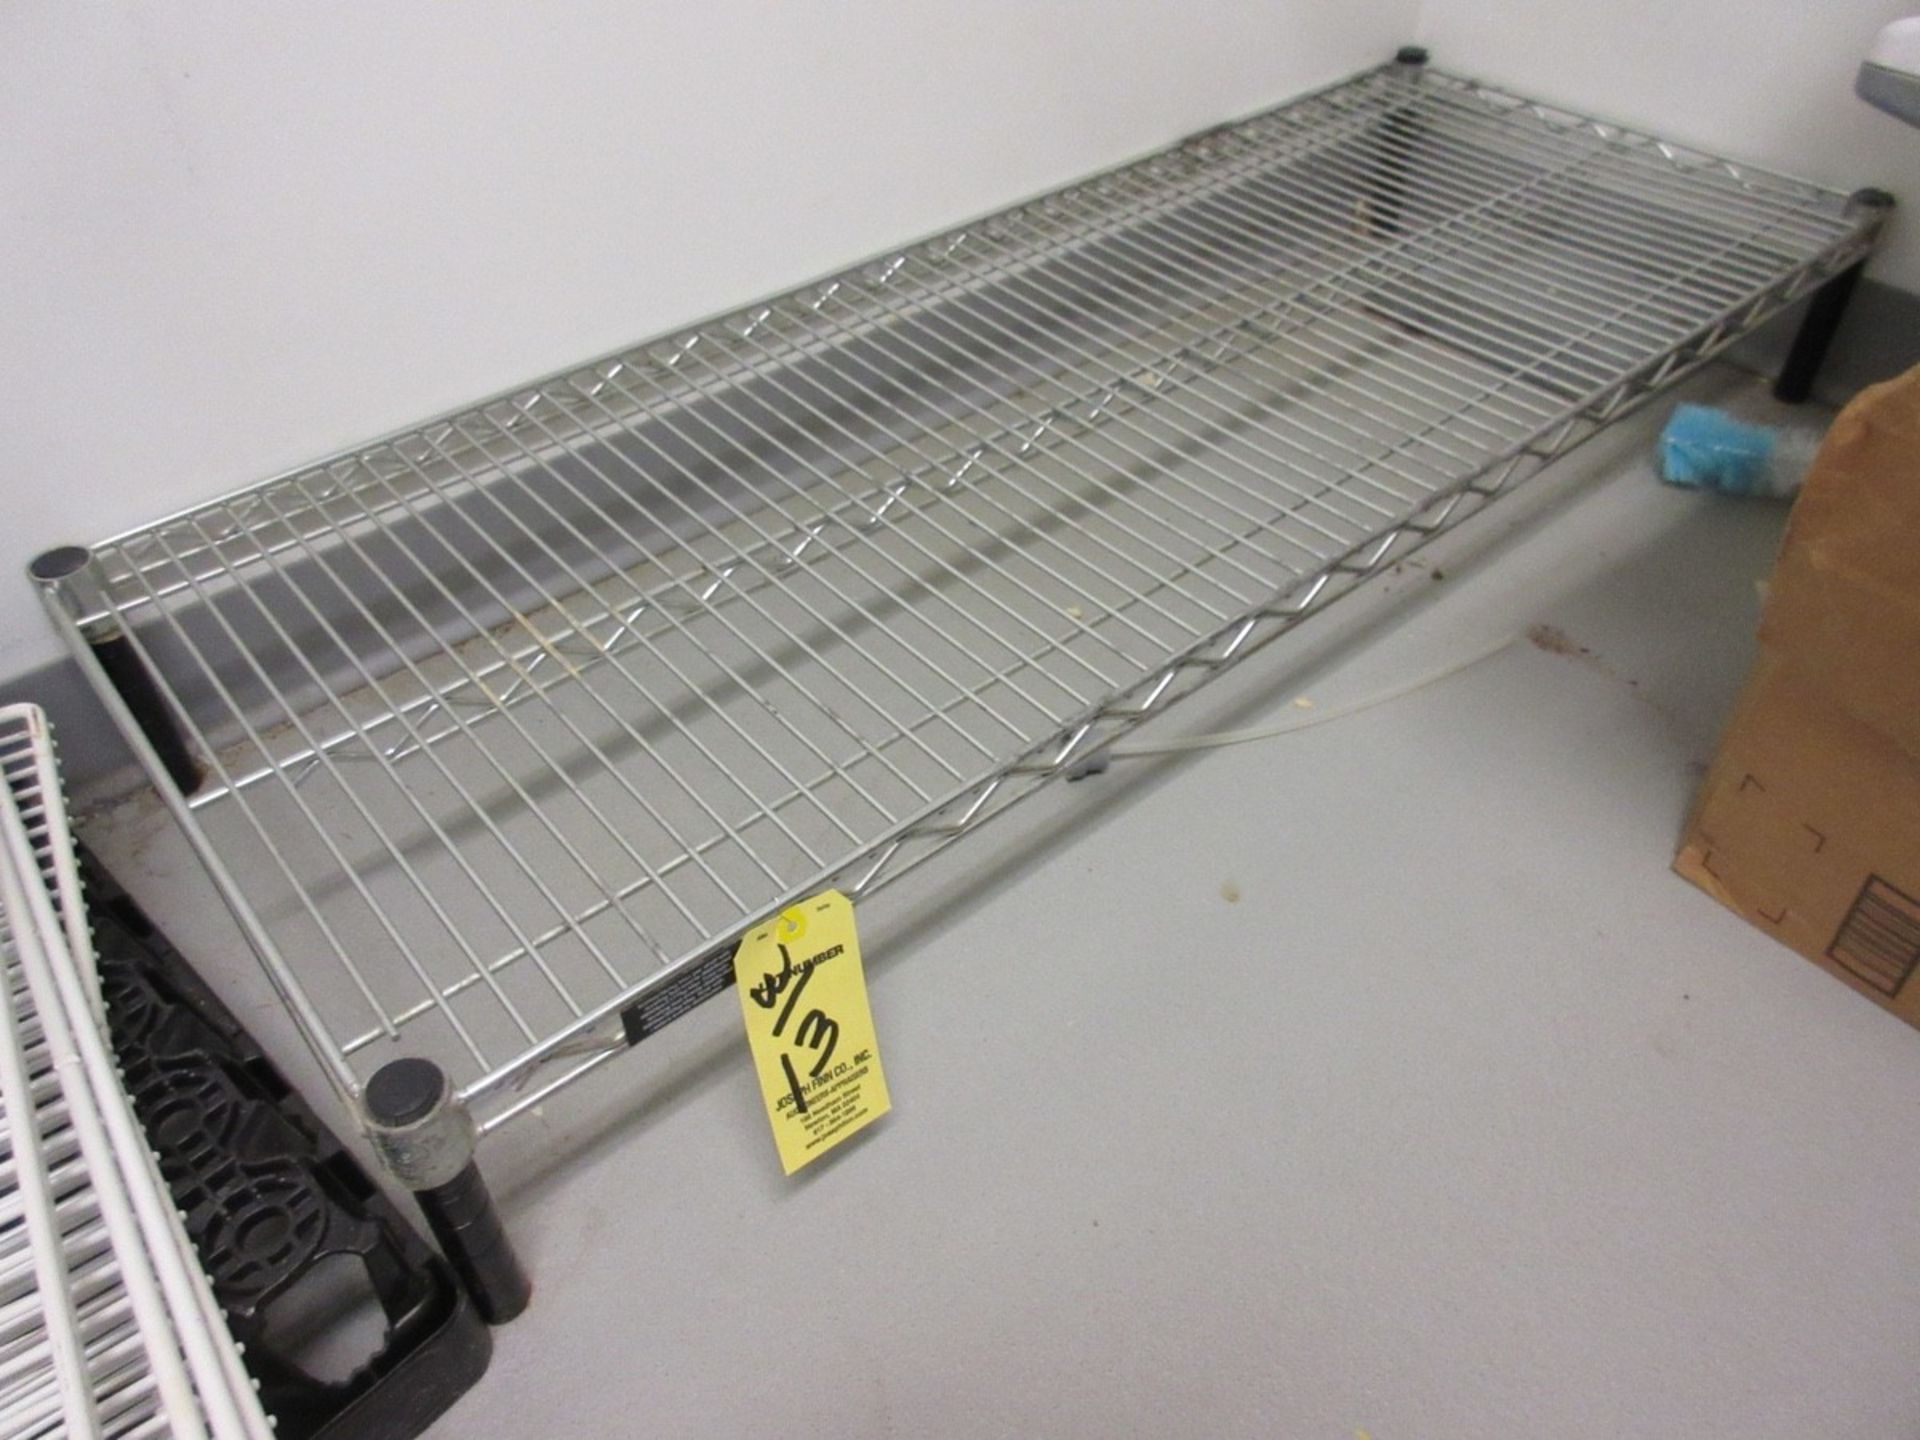 LOT (2) 5-Shelf Port. Wire Chrome Bakers Racks, 4' x 18" x 76" H, w/ (2) Wire Chrome Floor Racks, & - Image 3 of 4